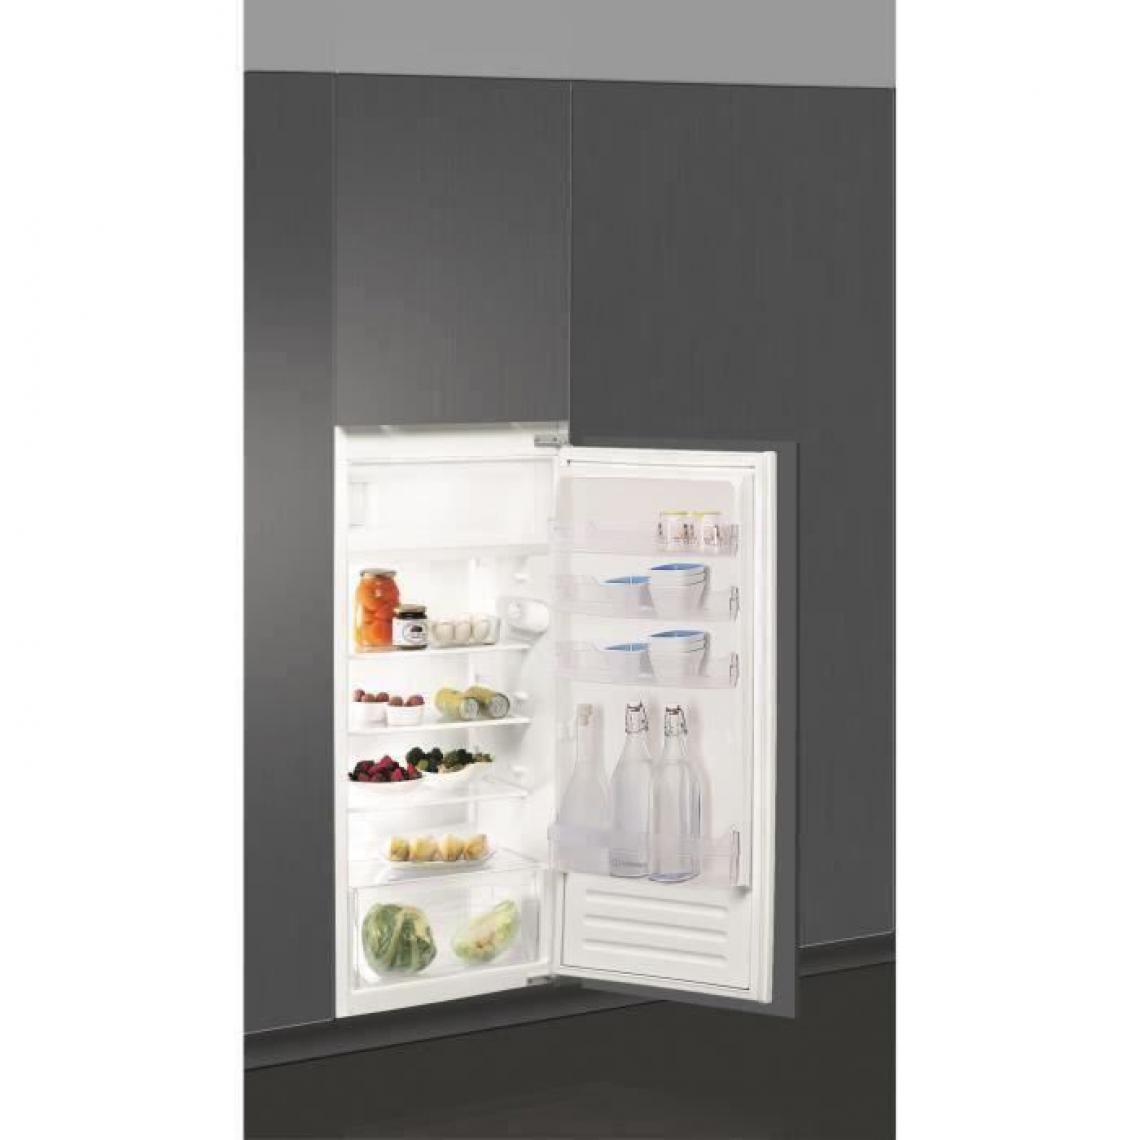 Indesit - Réfrigérateur 1 porte avec freezer - SZ12A2D/I1 - Encastrable - 189L (171 + 18) - Froid statique - A+ - L 56 x H 122.5 cm - Réfrigérateur